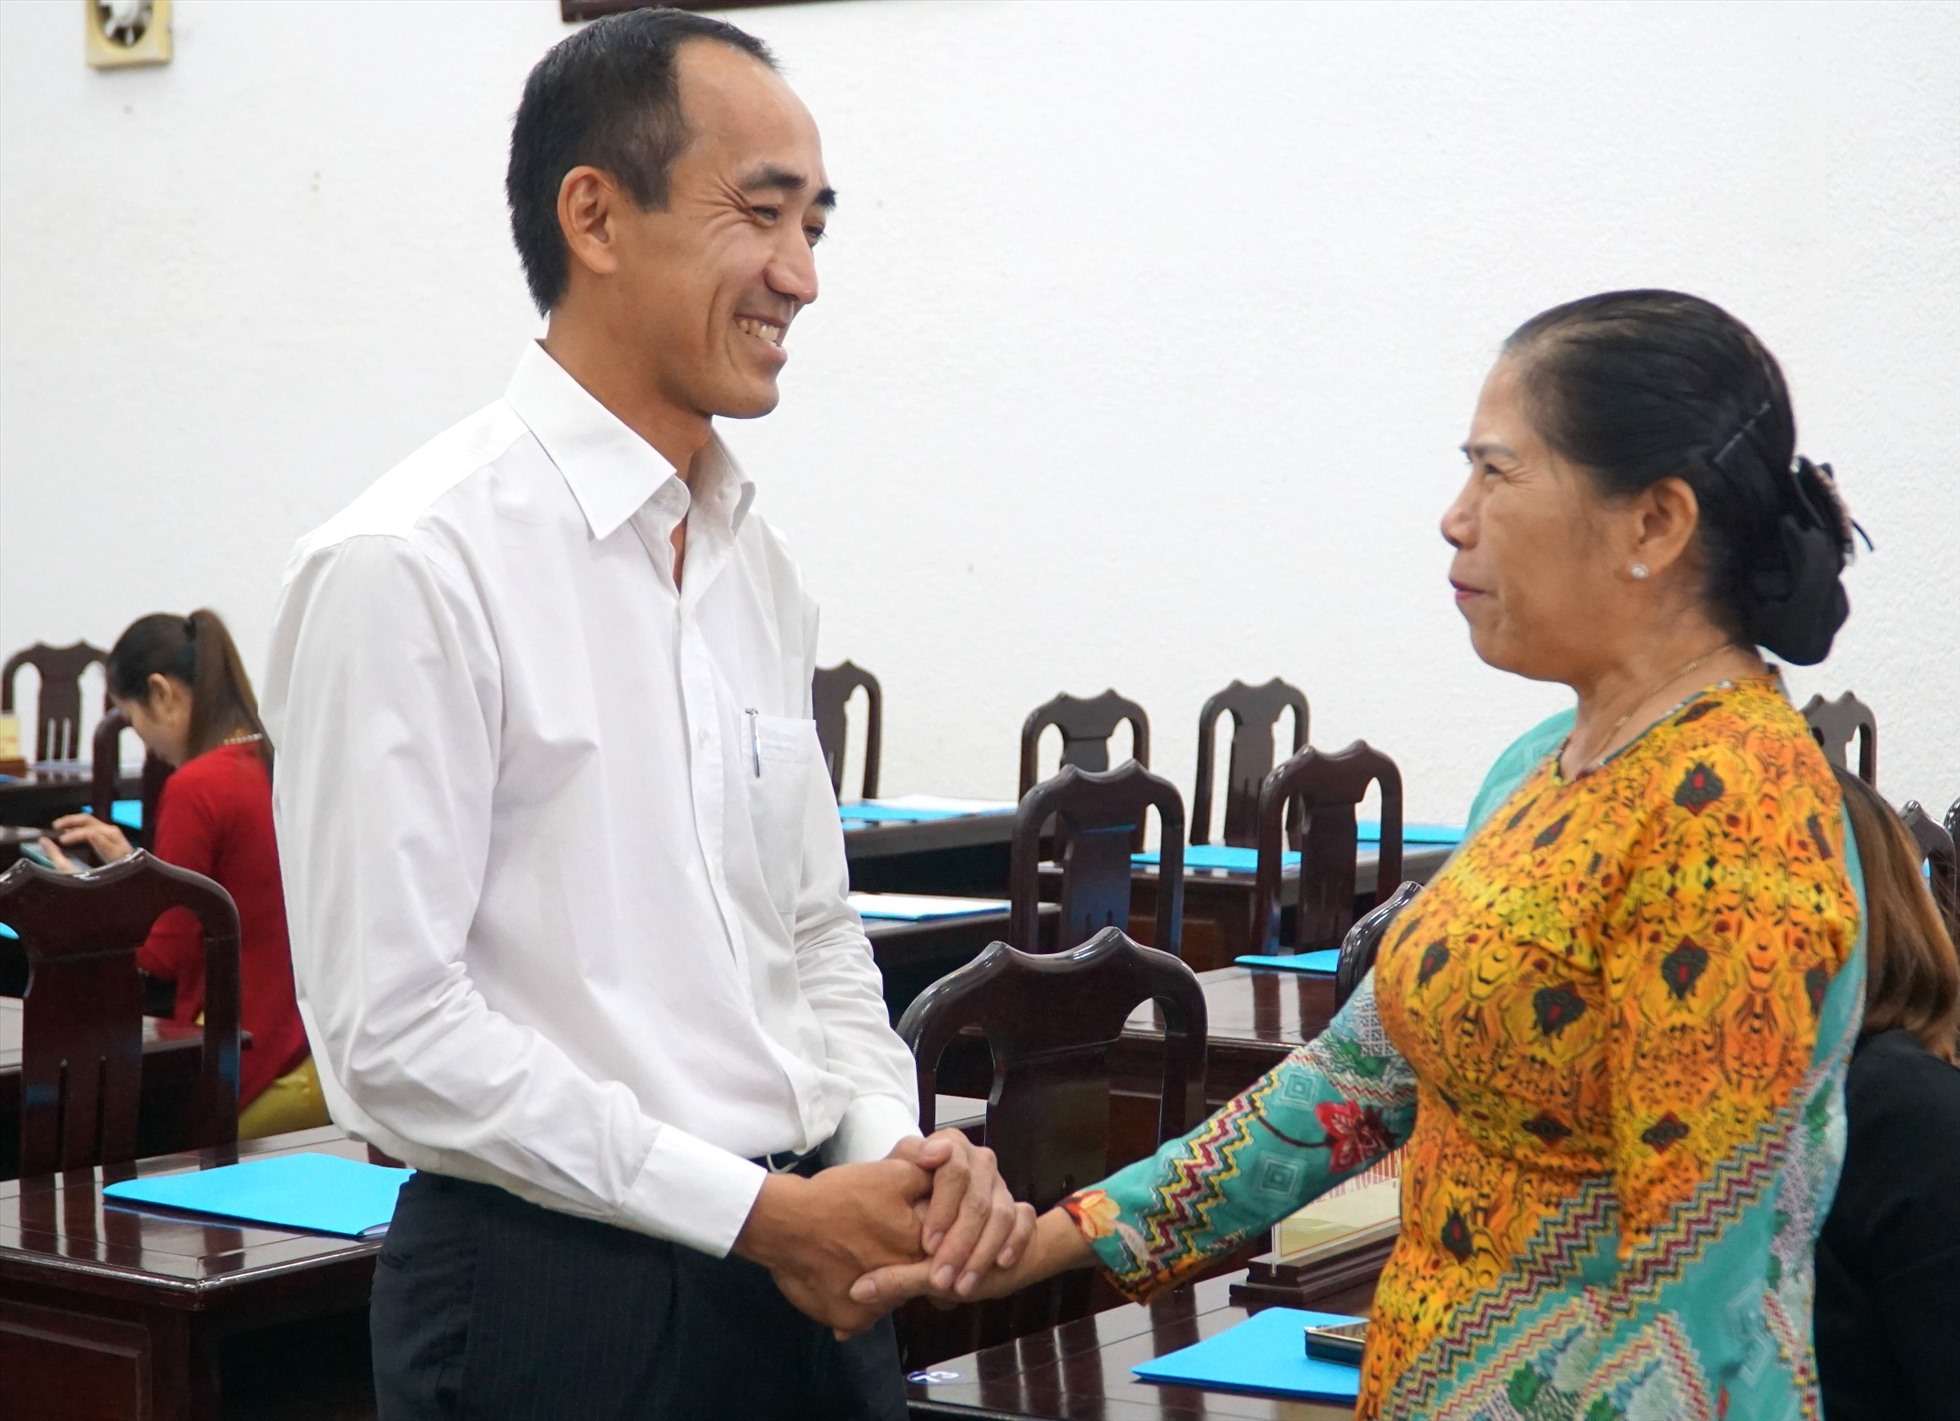 Giám đốc VCCI Cần Thơ Nguyễn Phương Lam trò chuyện với doanh nghiệp tỉnh Bạc Liêu. Ảnh: Nhật Hồ